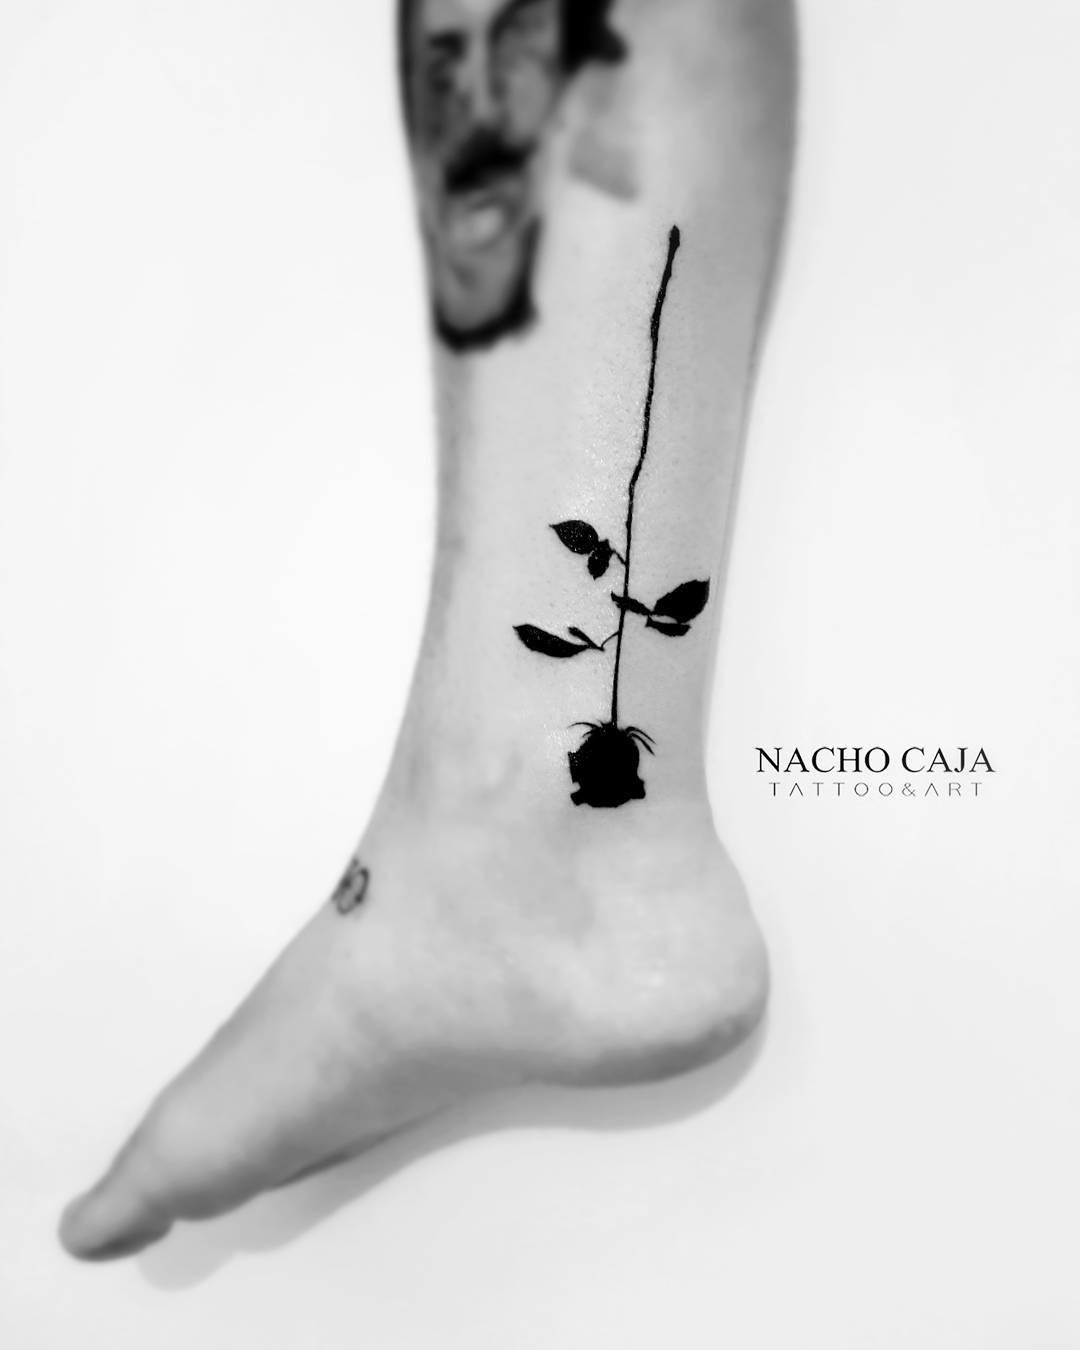 Tatuaje de una rosa negra en la pierna